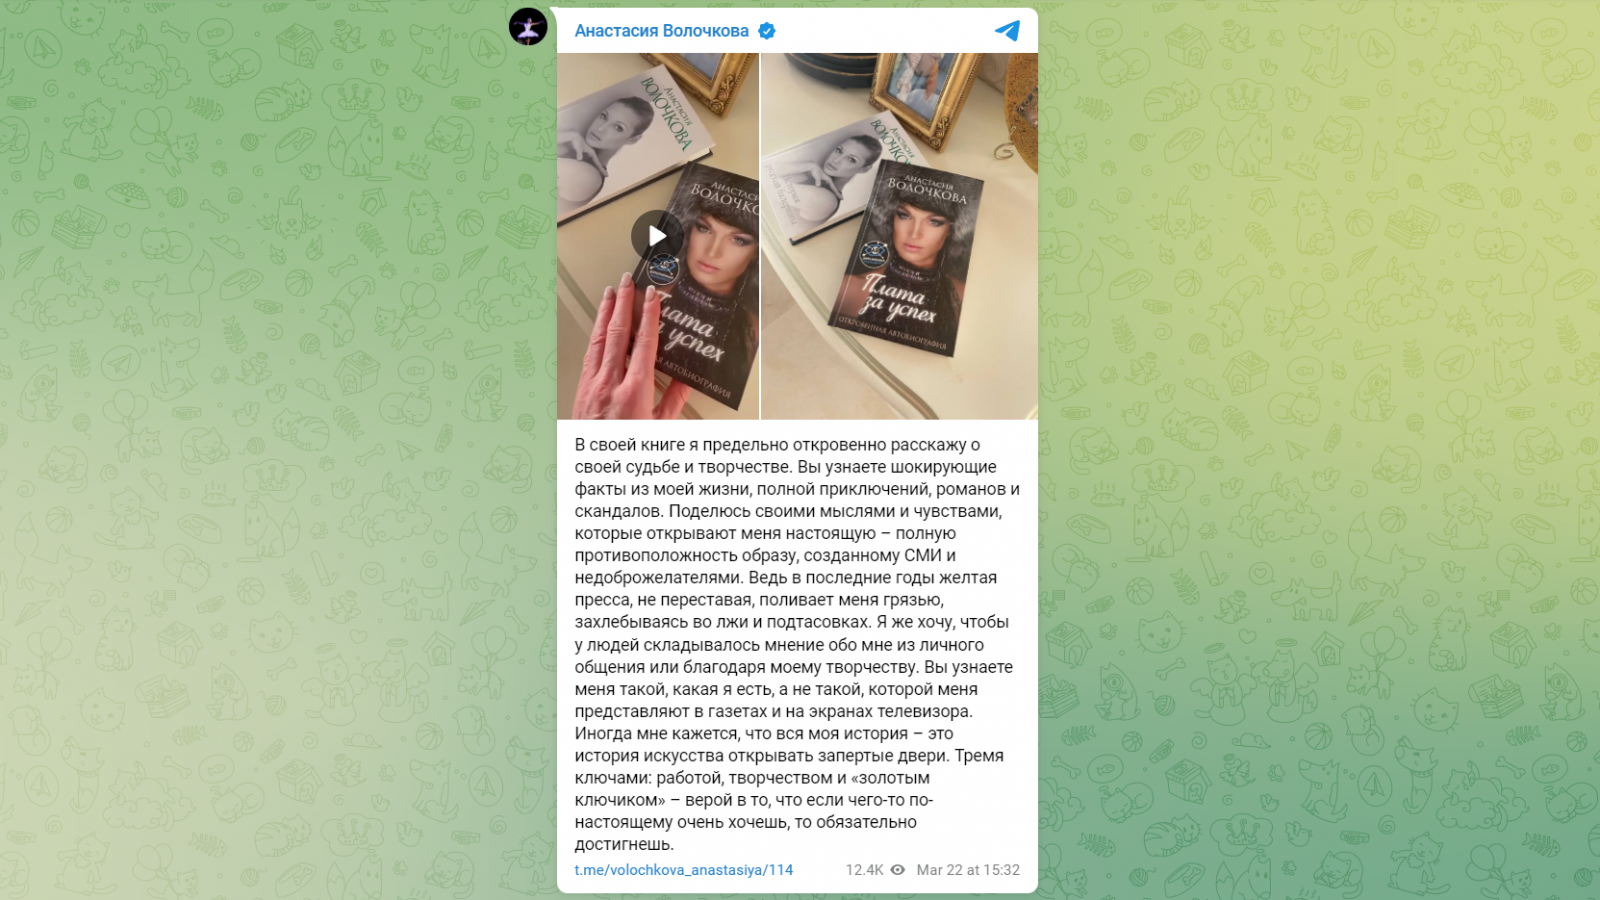 Анастасия Волочкова готовится удивить общественность своими мемуарами - image 1